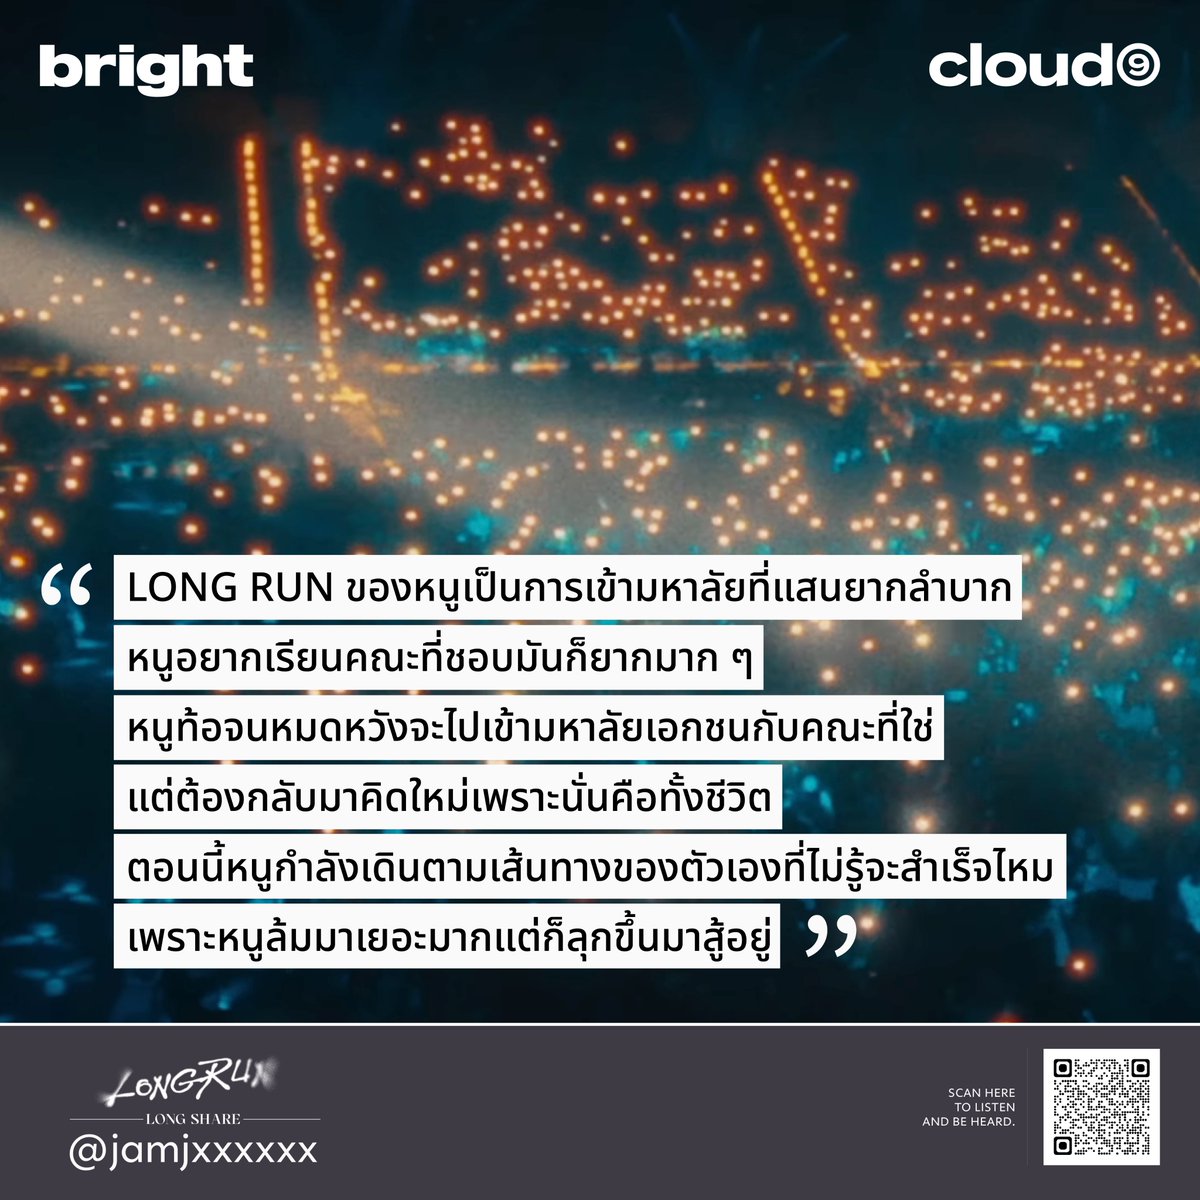 'หนูล้มมาเยอะมากแต่ก็ลุกขึ้นมาสู้อยู่'

#LongRunLongShare
#BRIGHT_LongRun

•••

WATCH OFFICIAL MV & LISTEN ON...
🔗 youtu.be/OdSqh9Dd-oY
🔗 bfan.link/long-run

#LongRunMV
#LongRun
#bbrightvc
#Cloud9Ent